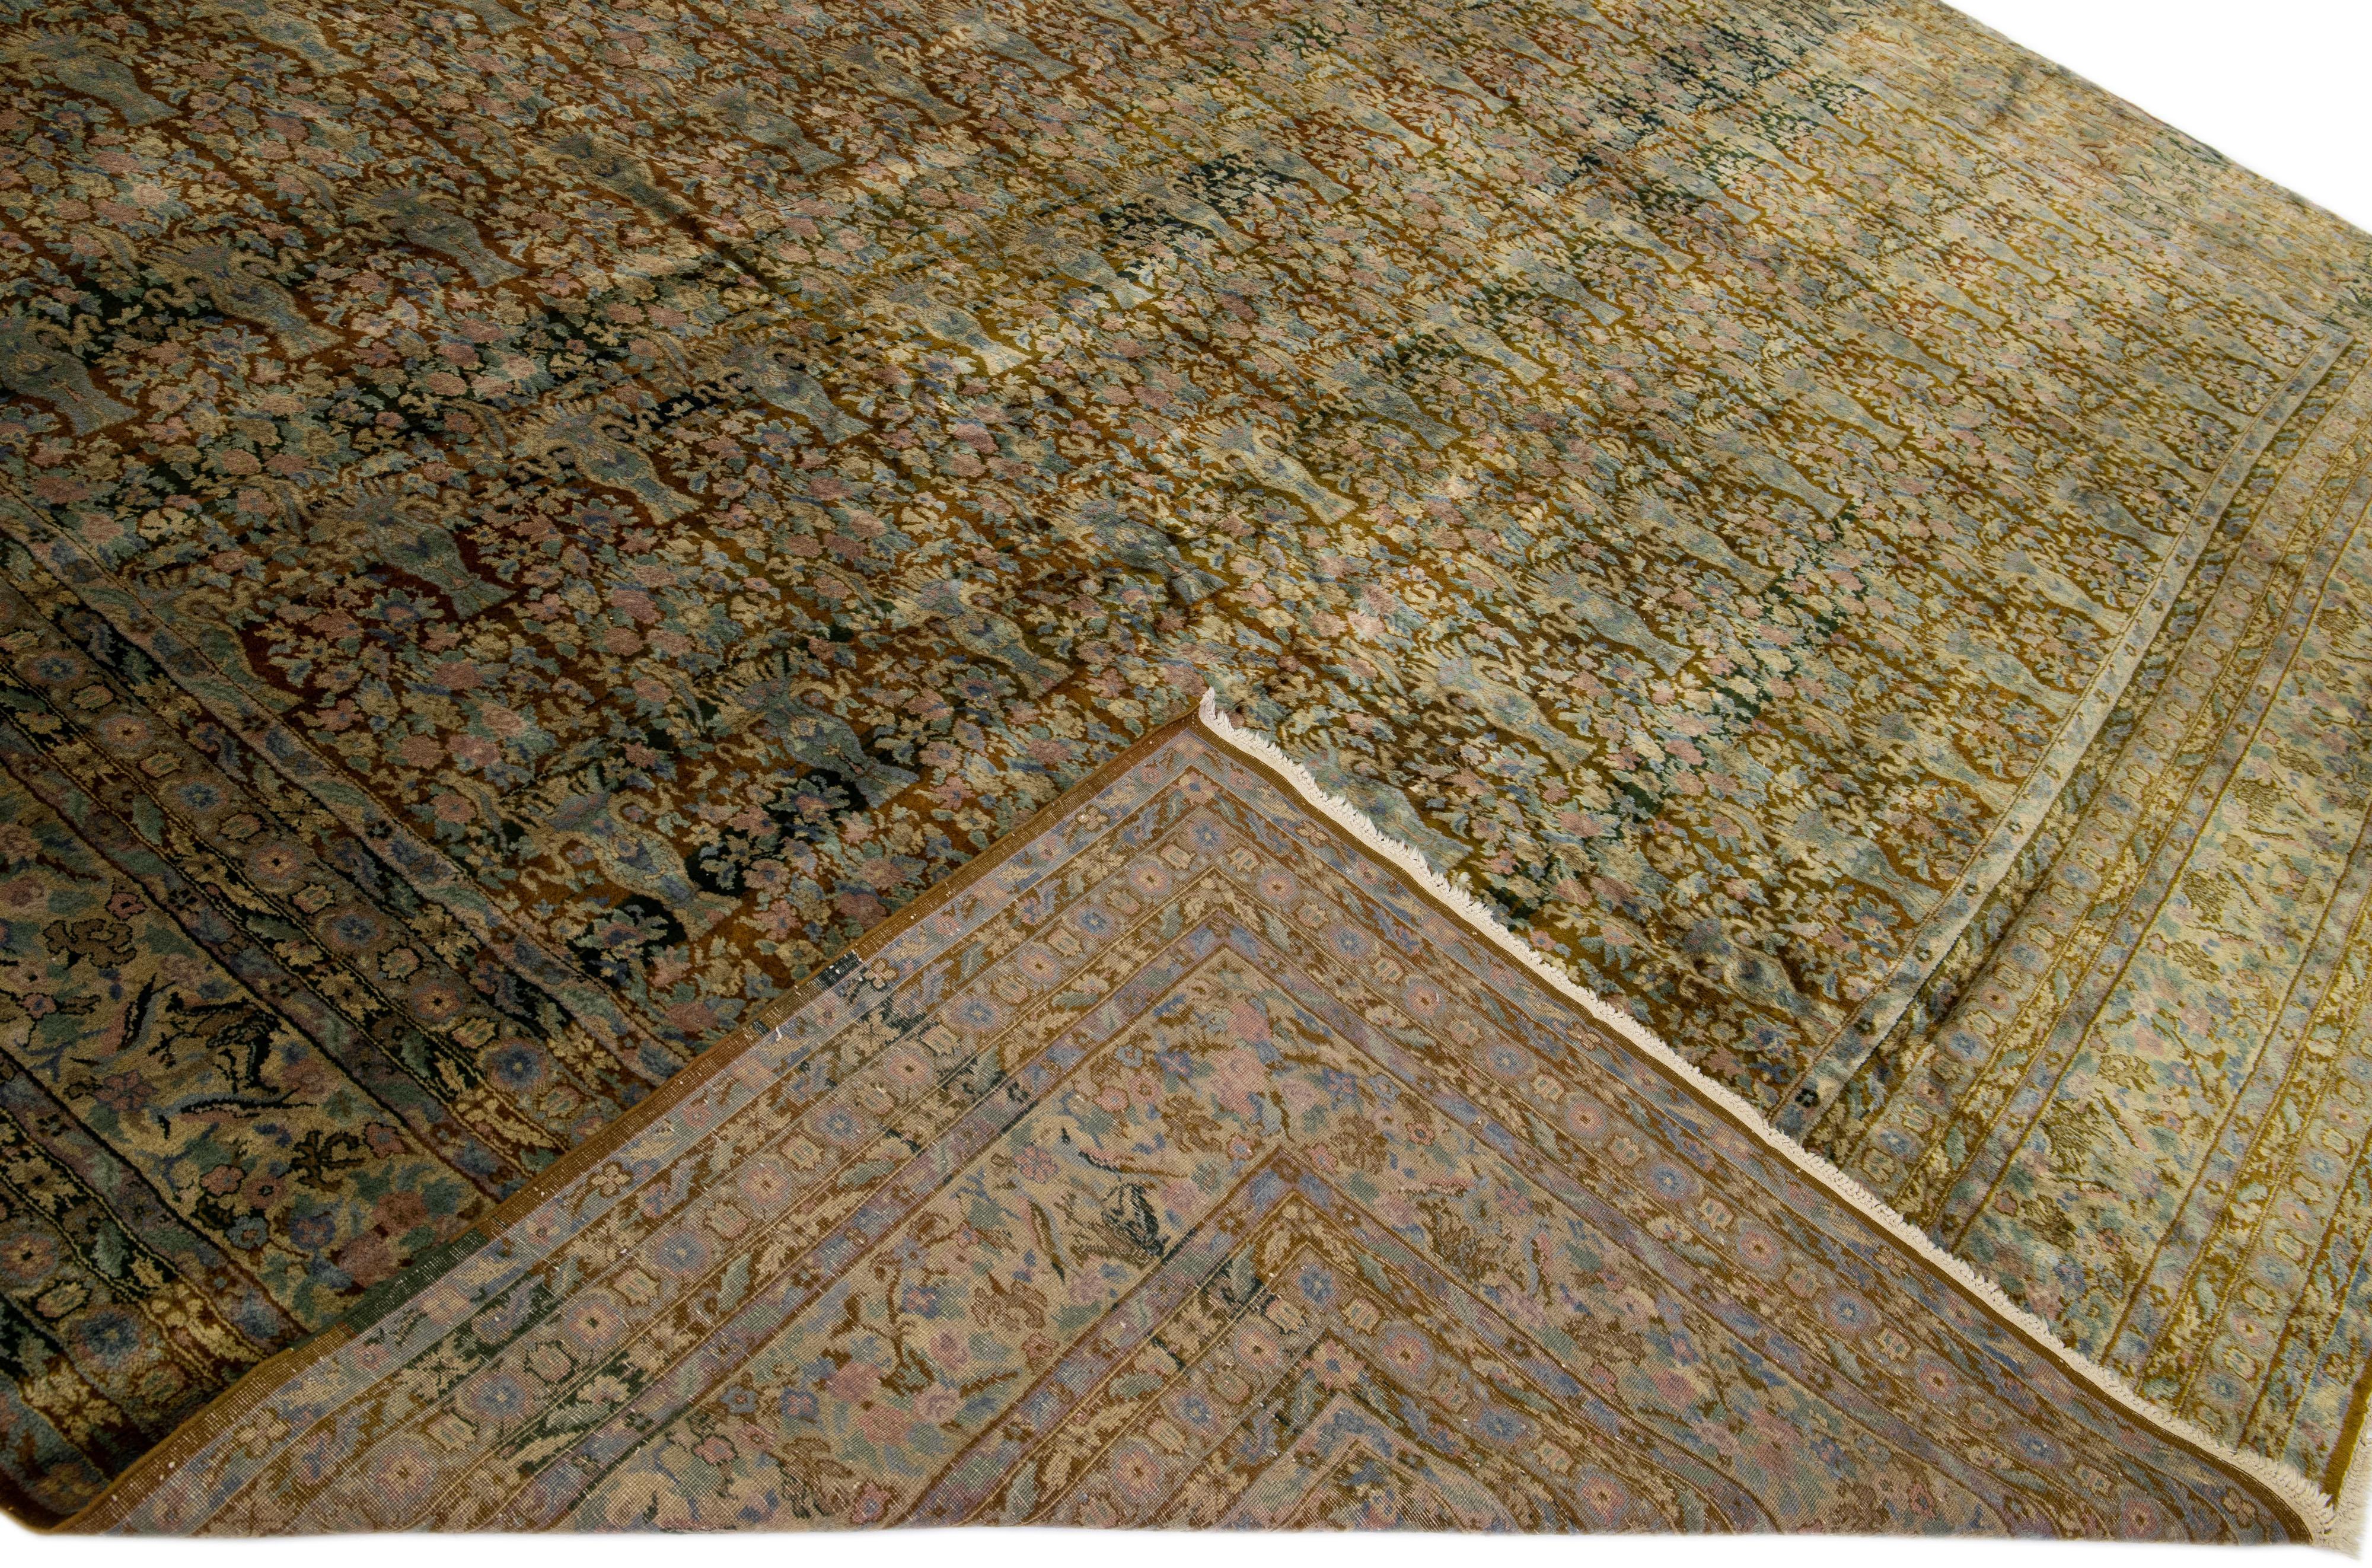 Schöner antiker, handgeknüpfter Agra-Wollteppich mit braunem Feld. Dieser indische Teppich hat rosa und blaue Akzente in einem wunderschönen floralen Allover-Muster.

Dieser Teppich misst: 14'5